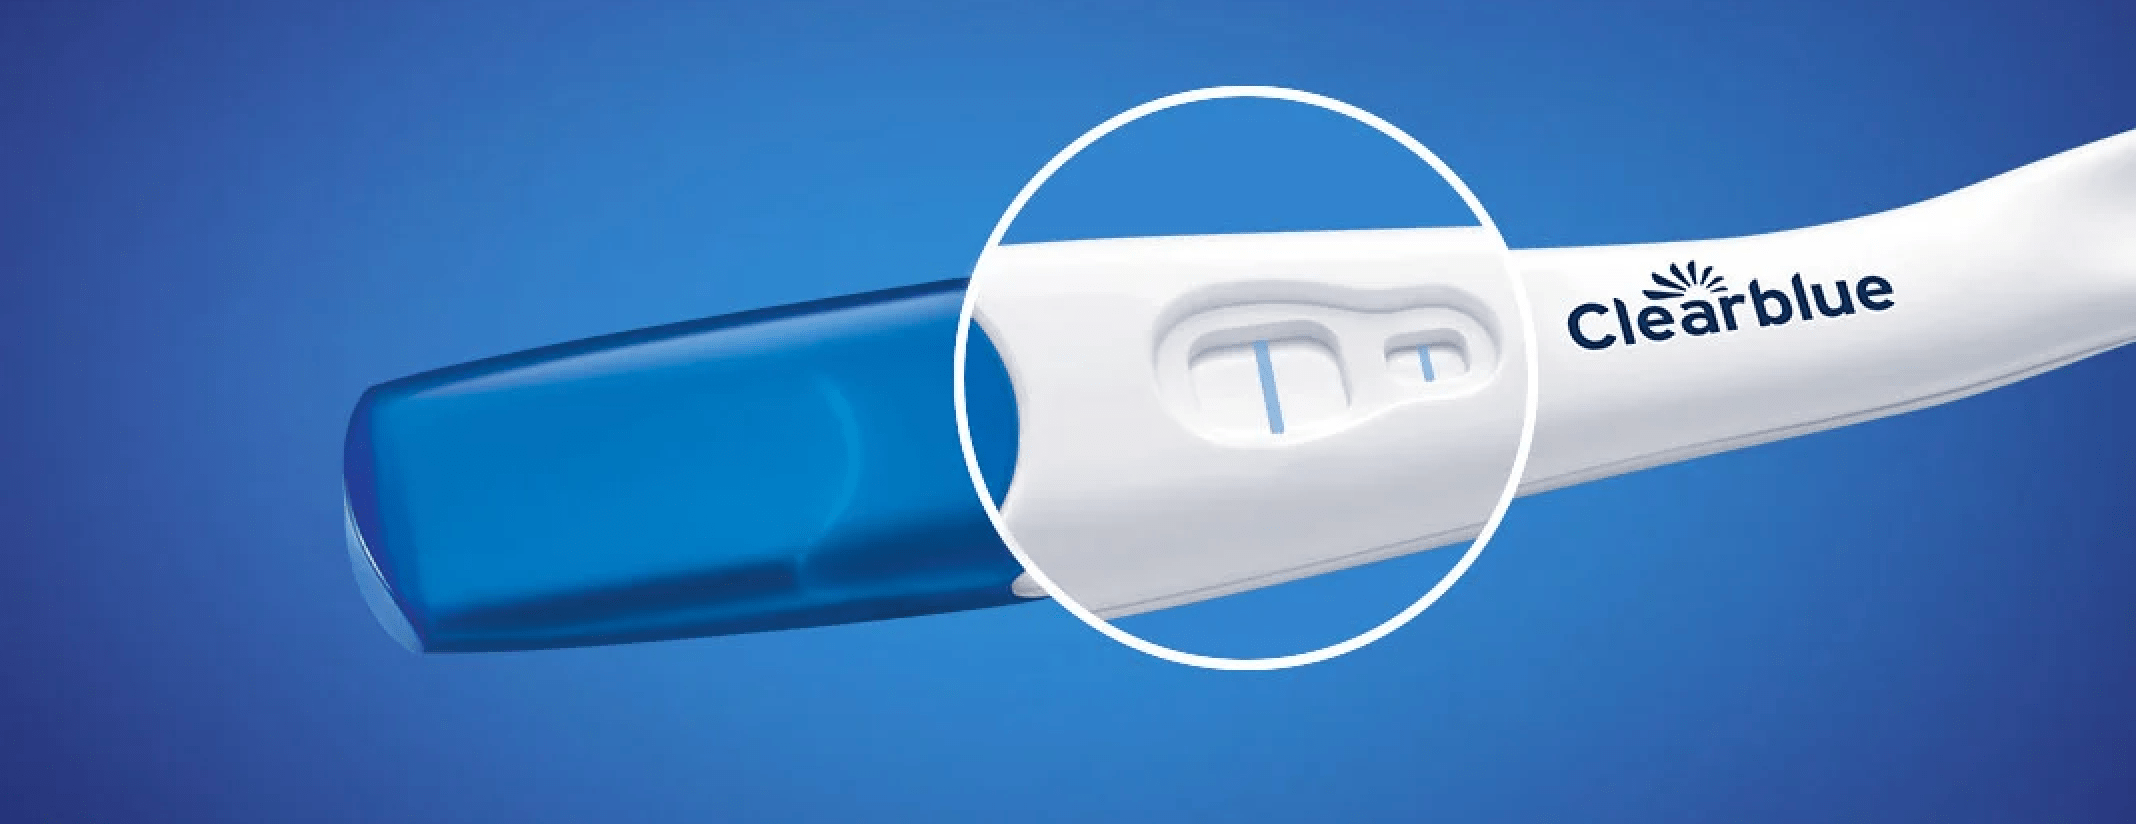 clearblue schwangerschaftstest kanela